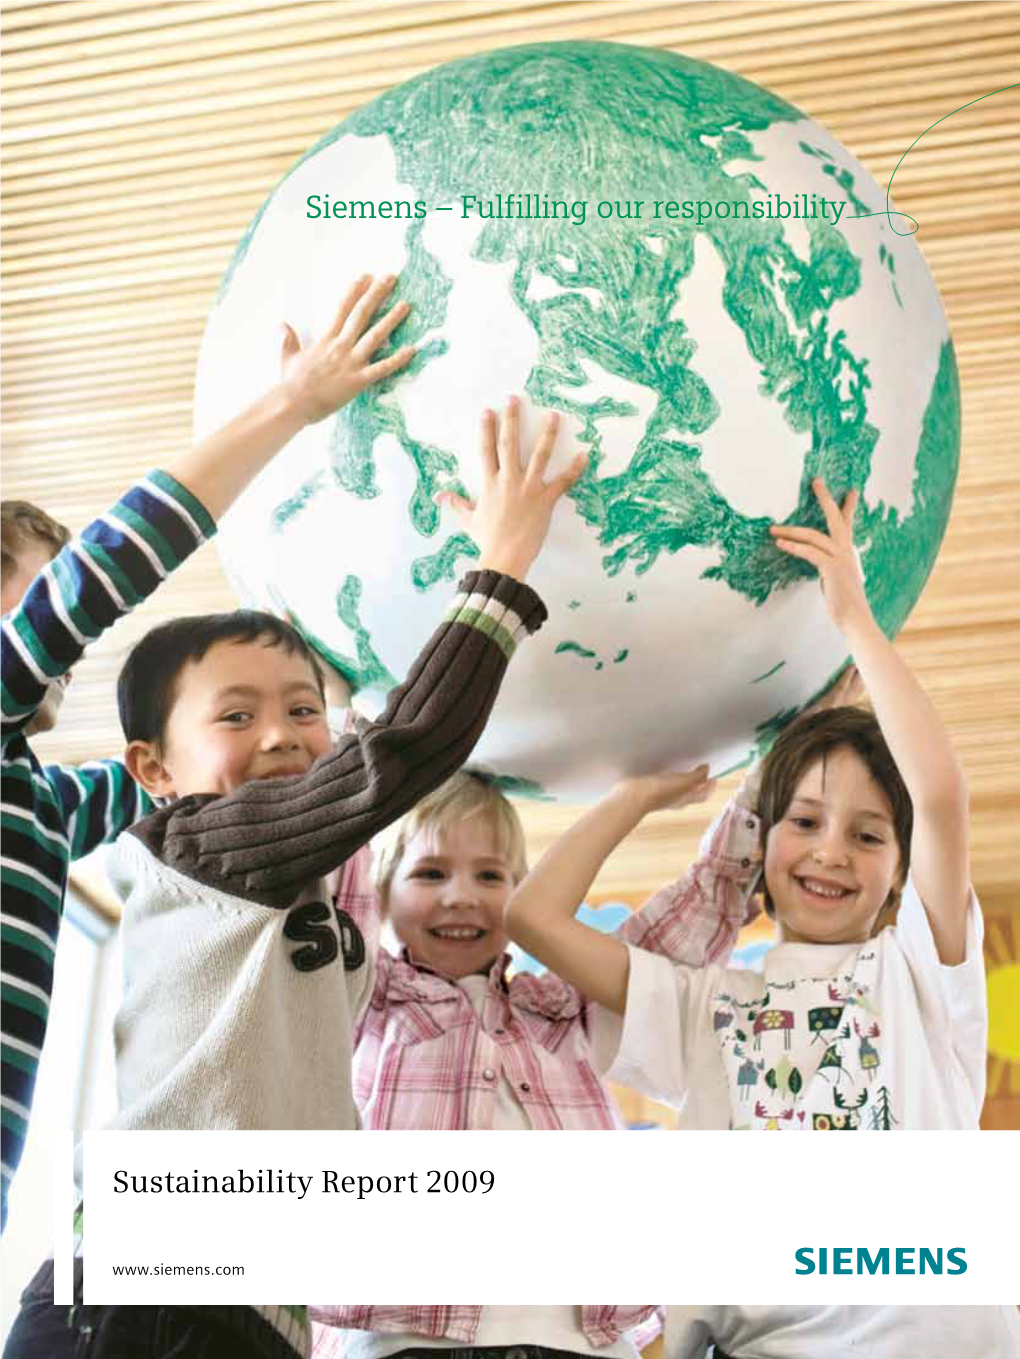 Siemens Sustainability Report 2009.”